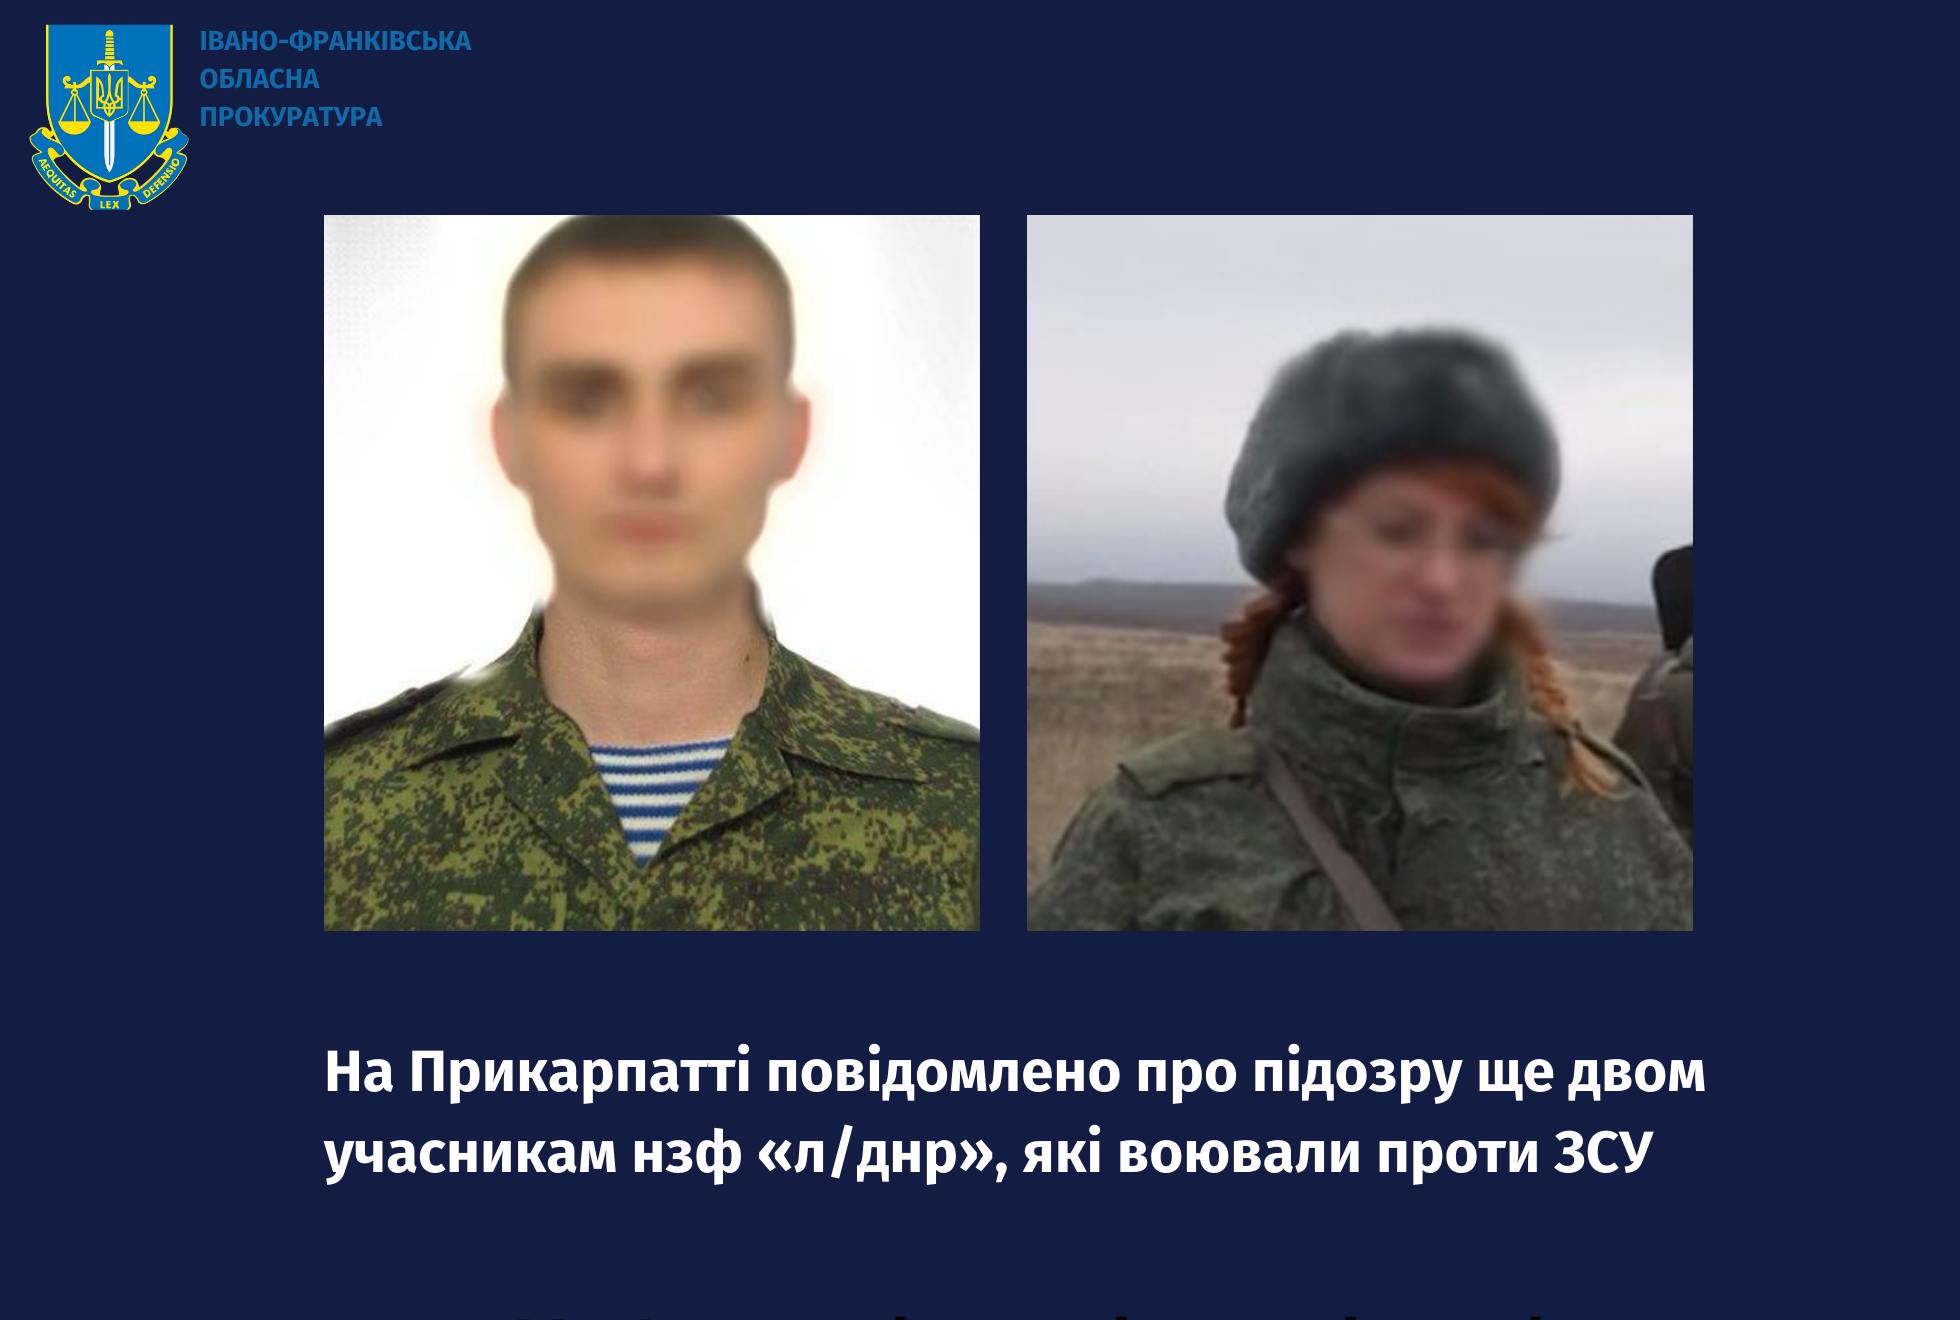 Прикарпатська прокуратура повідомила про підозру двом учасникам “л/днр”, які воювали проти ЗСУ